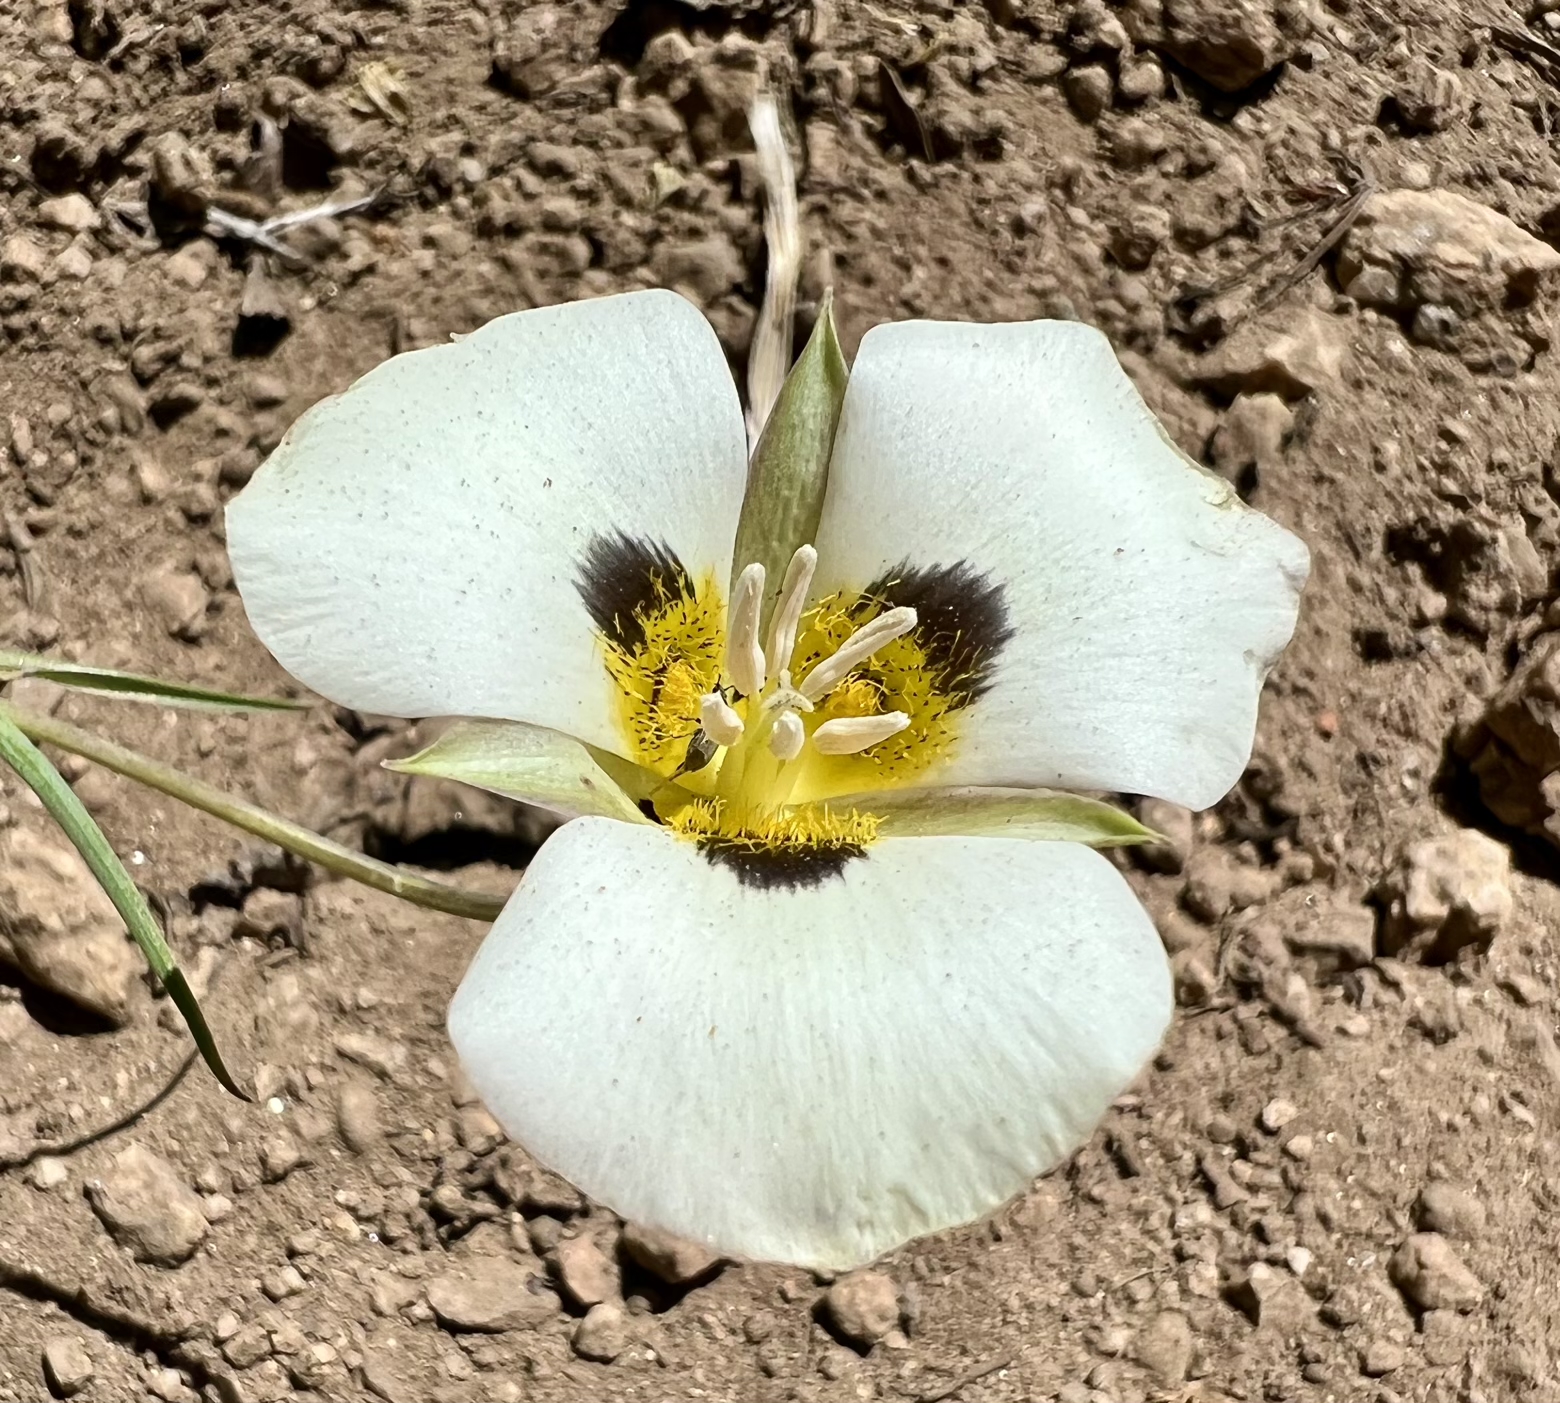 Leichtlin’s Mariposa Lily